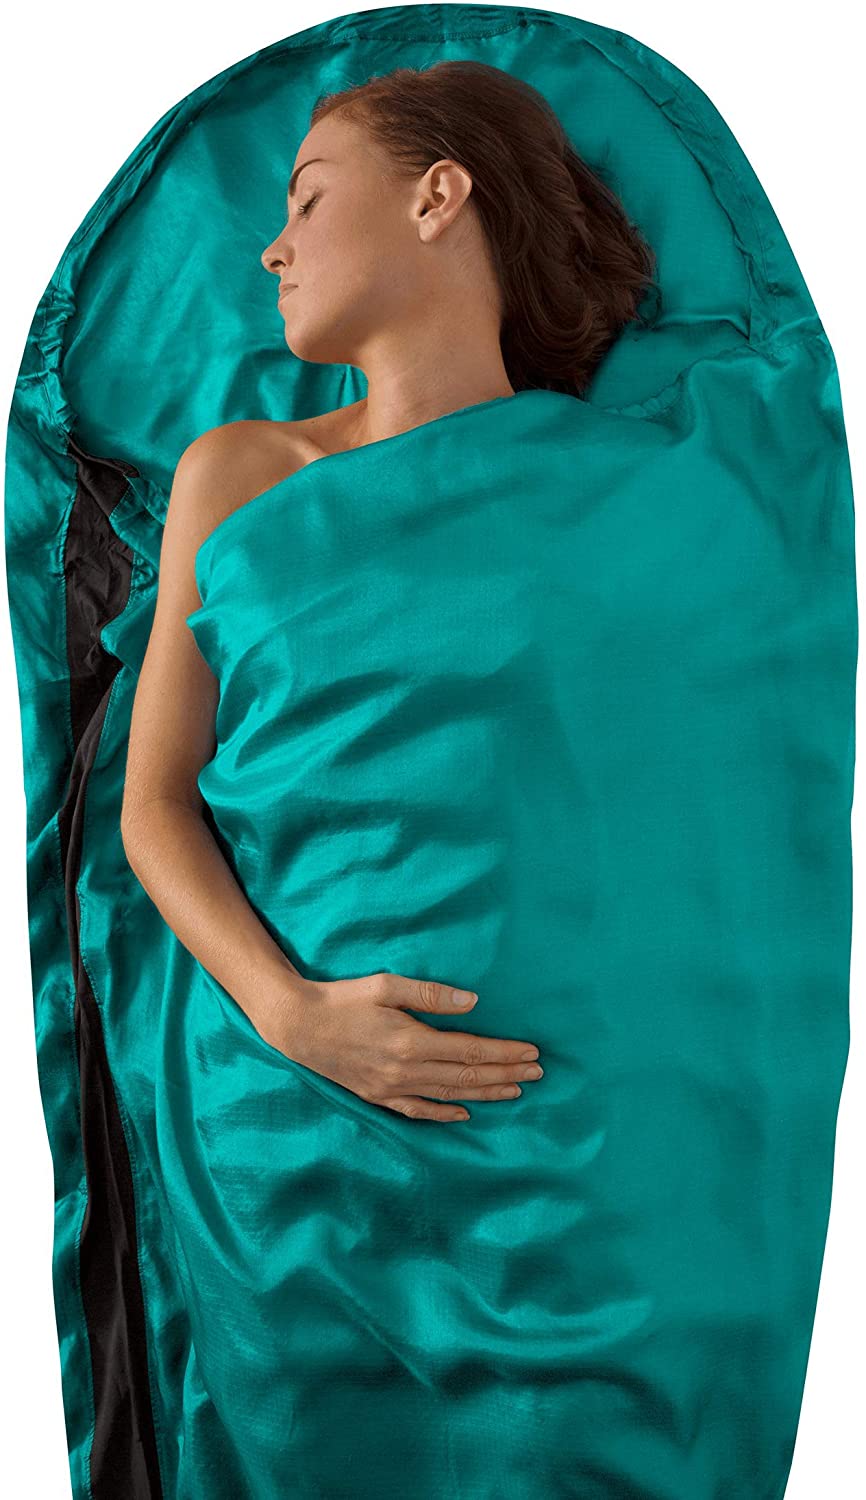 sleeping-bag-liner